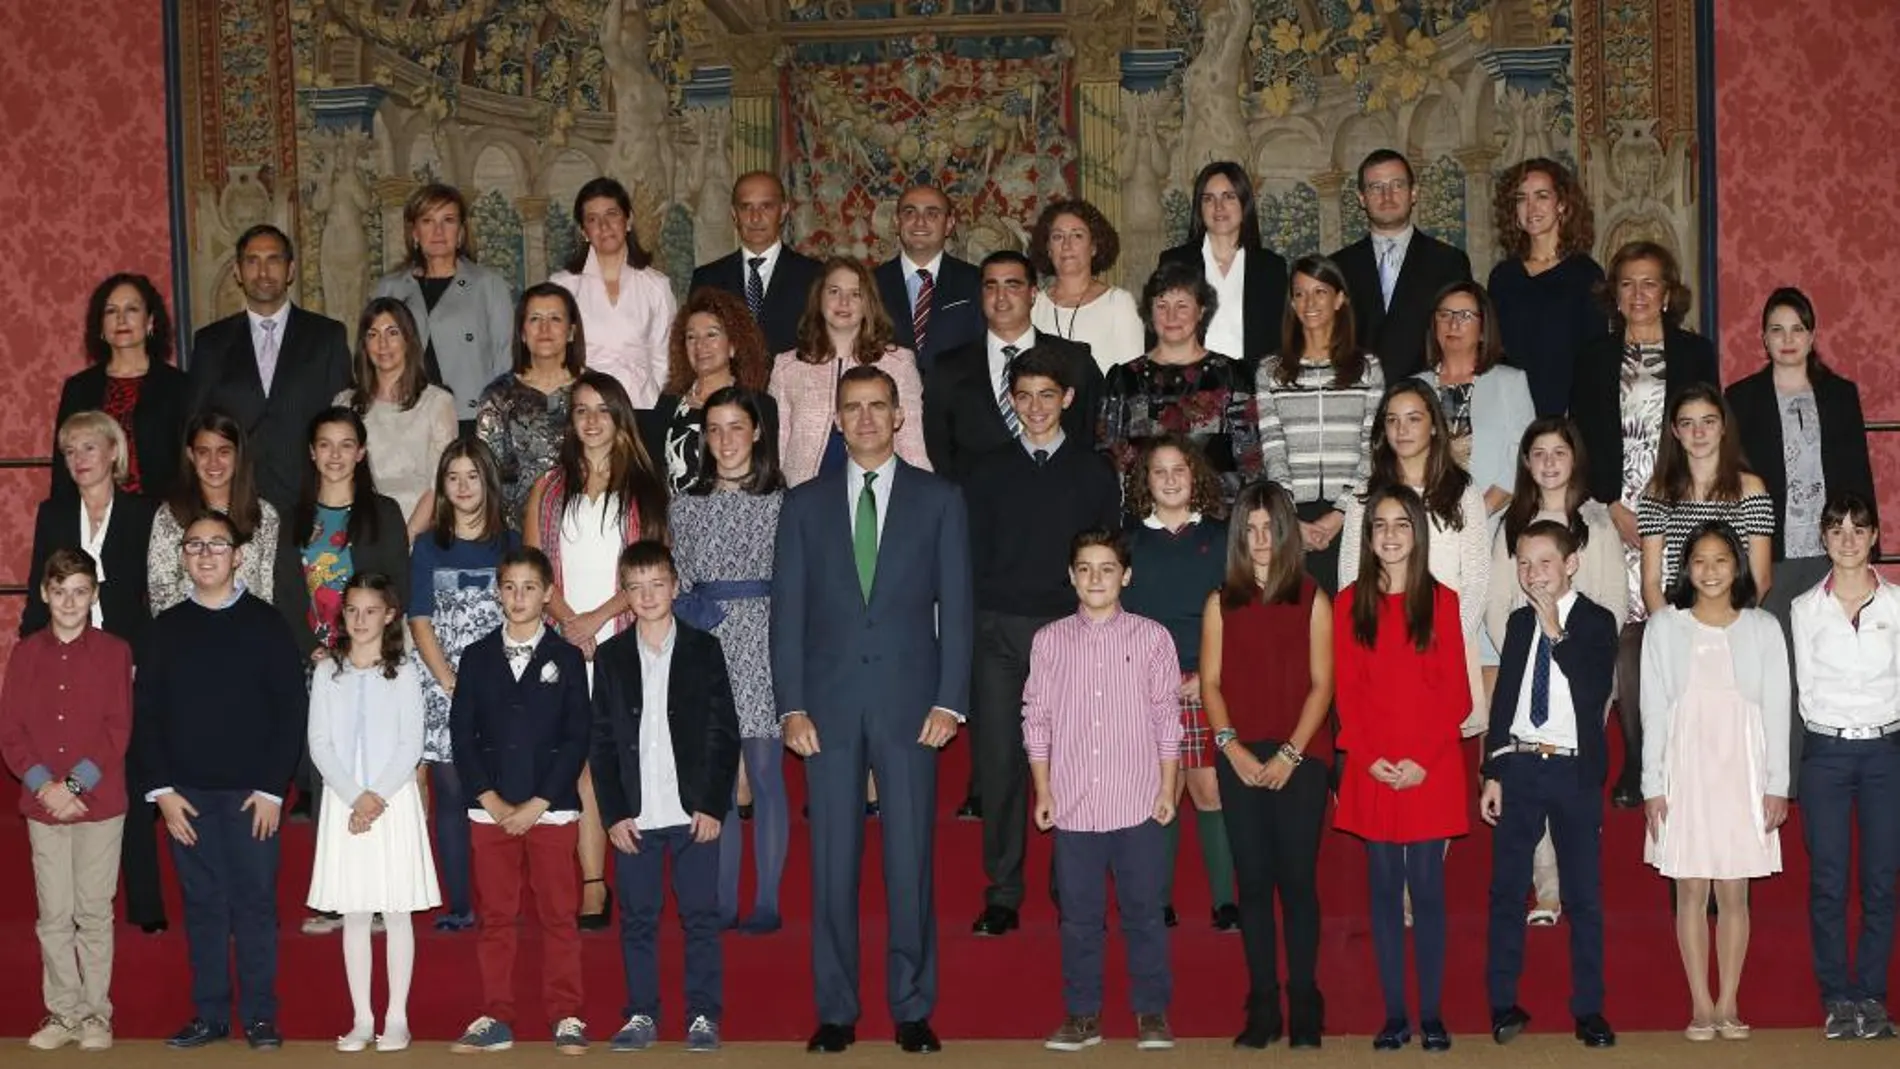 El Rey Felipe VI posa con los niños ganadores de la última edición del concurso escolar "¿Qué es un Rey para ti?"y sus profesores, a los que ha recibido hoy en audiencia en el Palacio de El Pardo